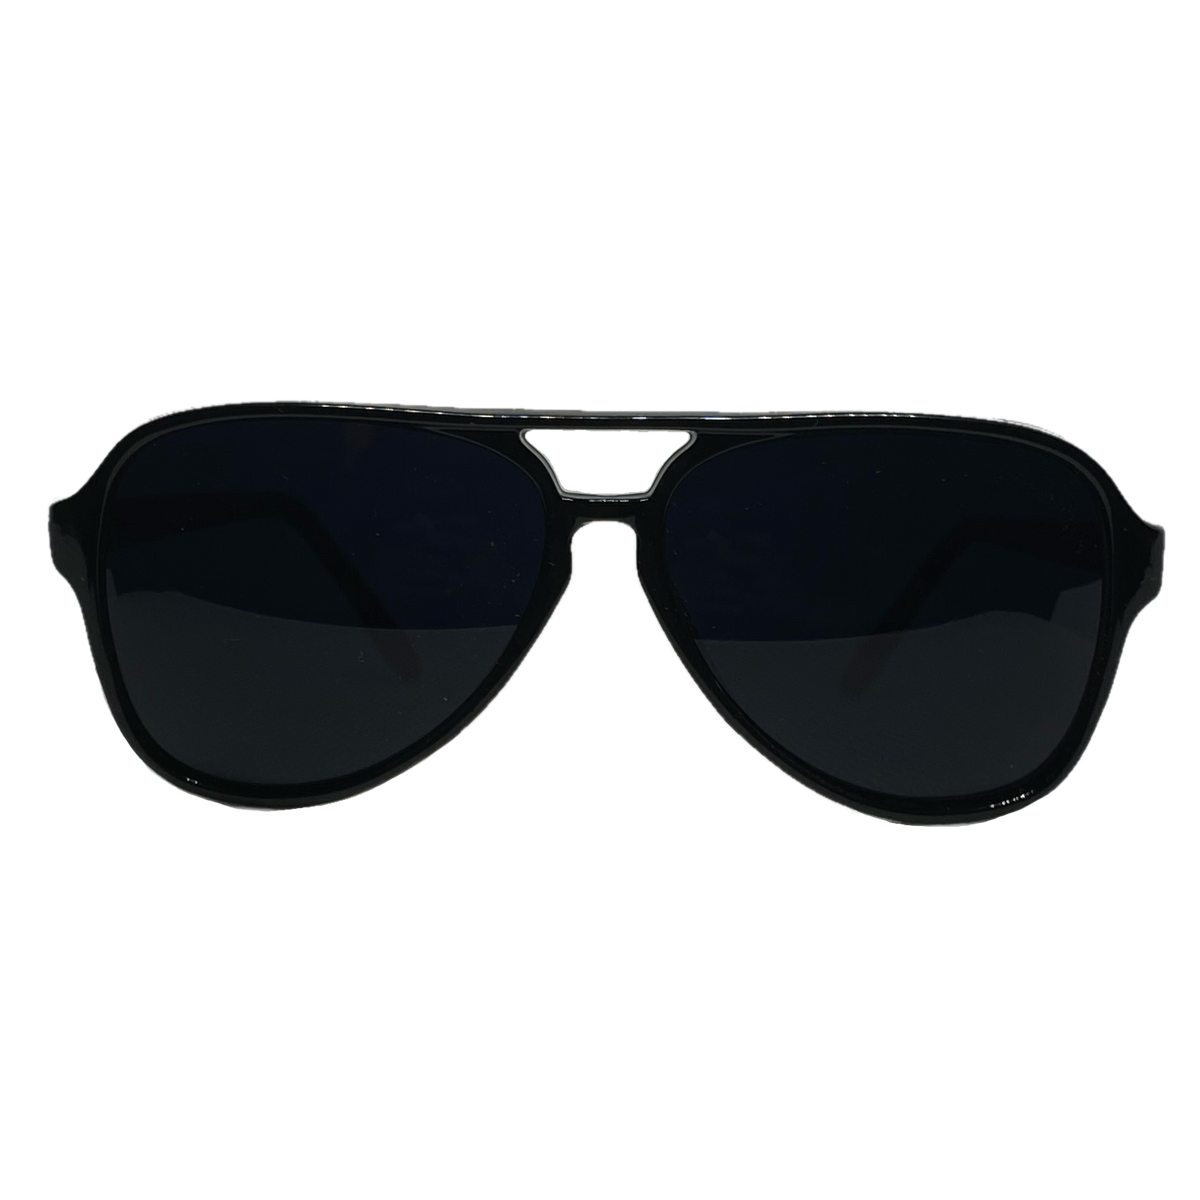 Dark BLACK Lens Sunglasses Vintage Retro Aviator Men Women Classic Frame  Glasses